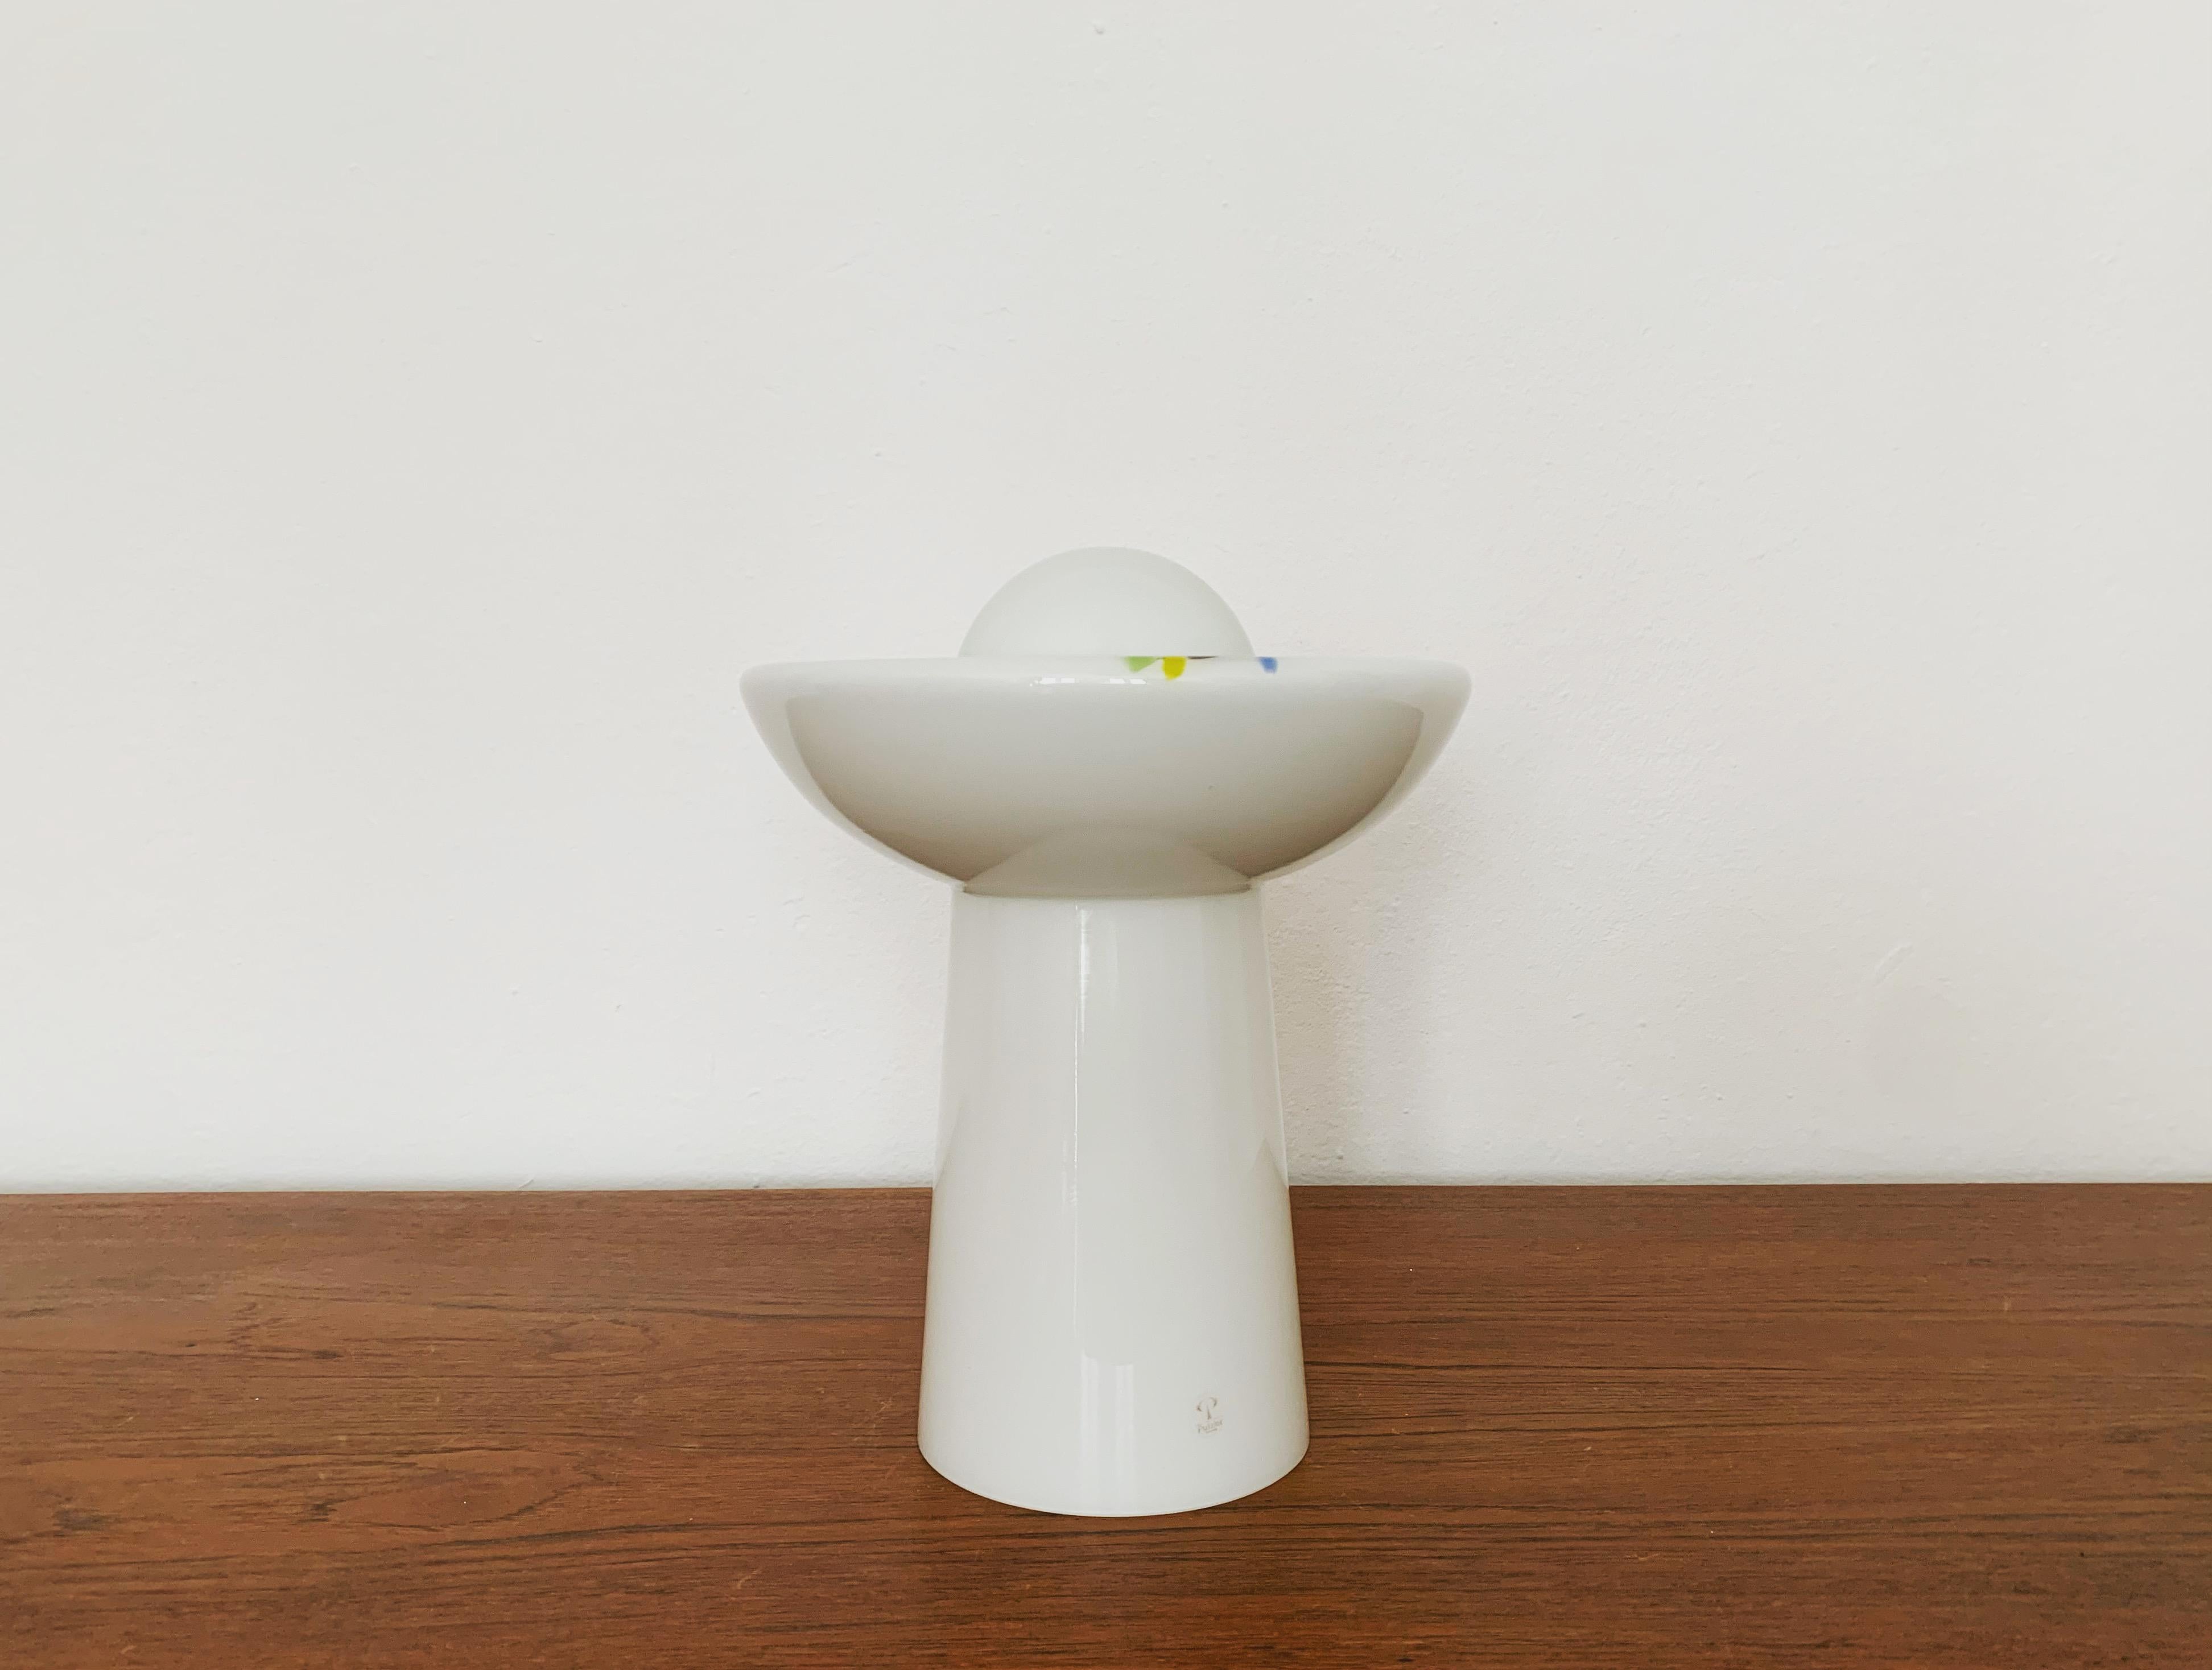 Très belle lampe de table en verre opale des années 1960.
Cette lampe est très noble et constitue un objet de design très spécial.
Une lumière agréable est créée.

Fabricant : Peill et Putzler

Condit :

Très bon état vintage avec de légers signes